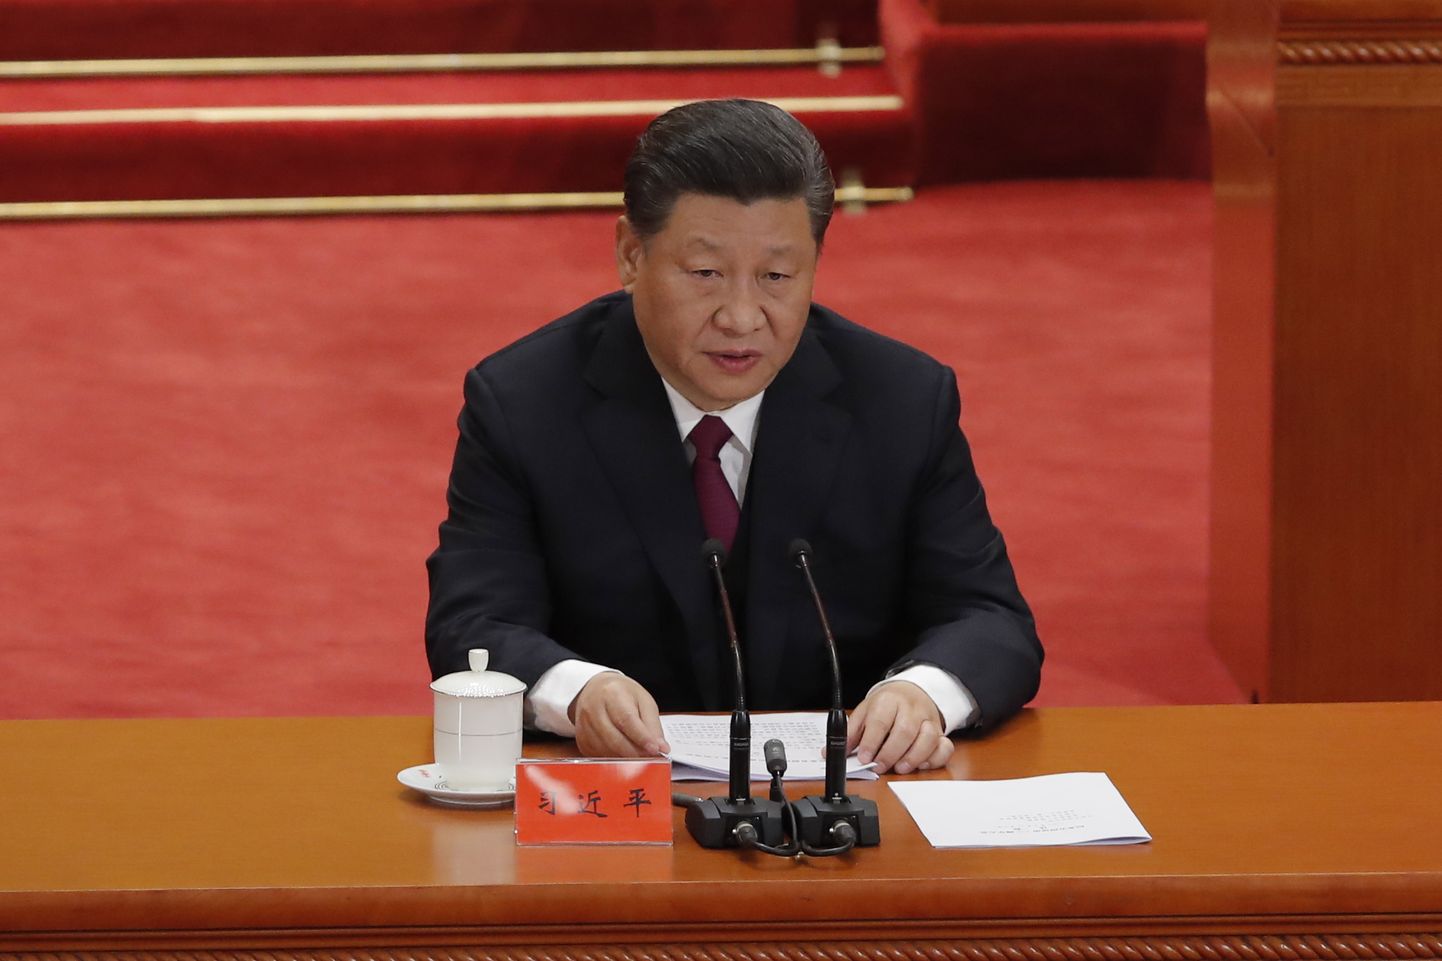 Hiina president Xi Jinping teisipäeval Pekingi Suures Rahvapalees 4. mai liikumise 100. aastapäeva puhul kõnet pidamas.